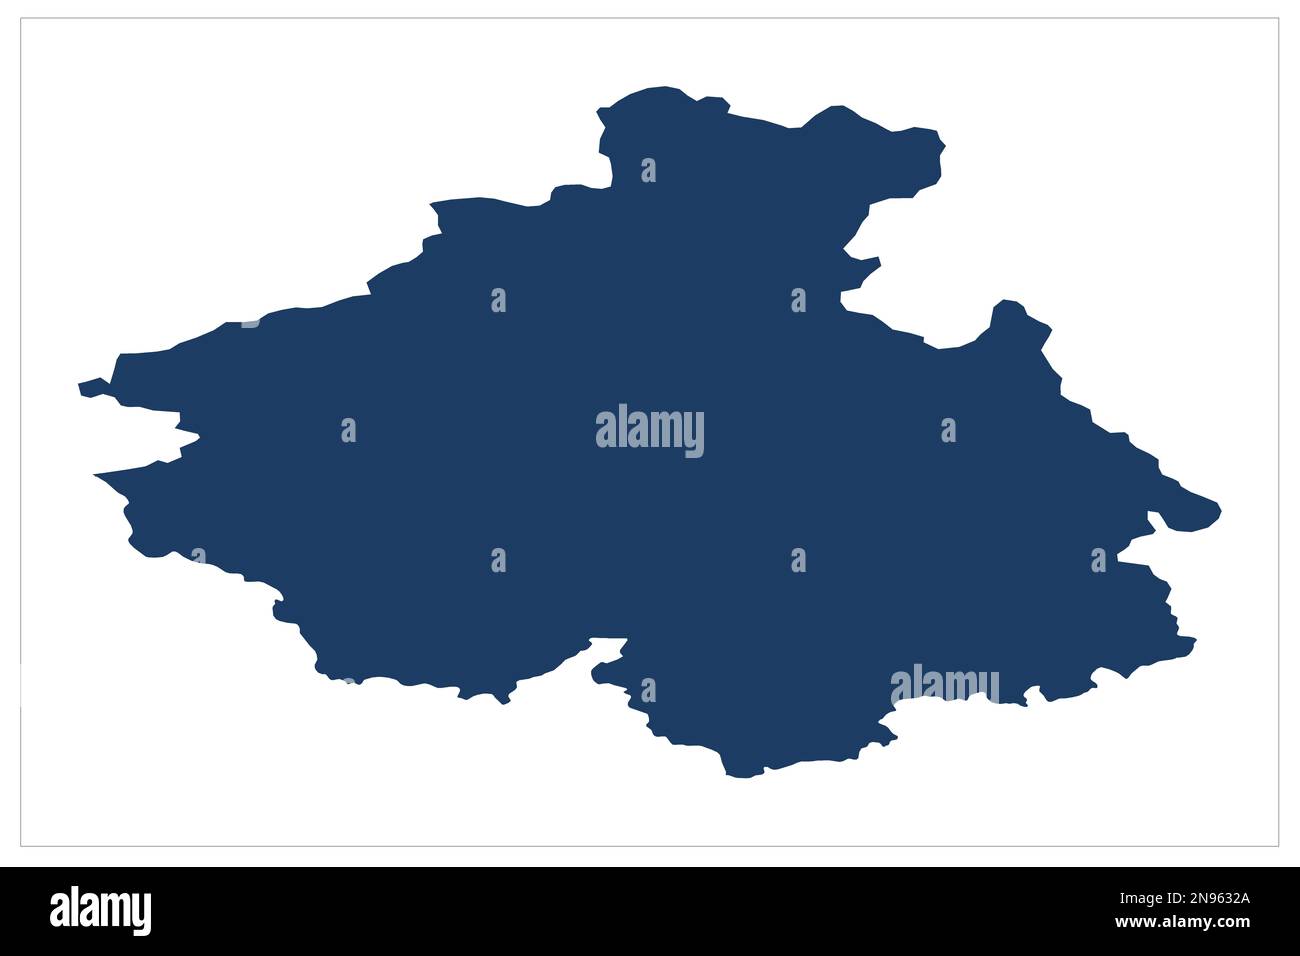 Gorno-Altayskaya A.Obl. Respublika Altay, Oirot|République de l'Altaï, Gorno Atlay Russie province carte de l'État Illustration sur fond blanc avec c bleu Banque D'Images